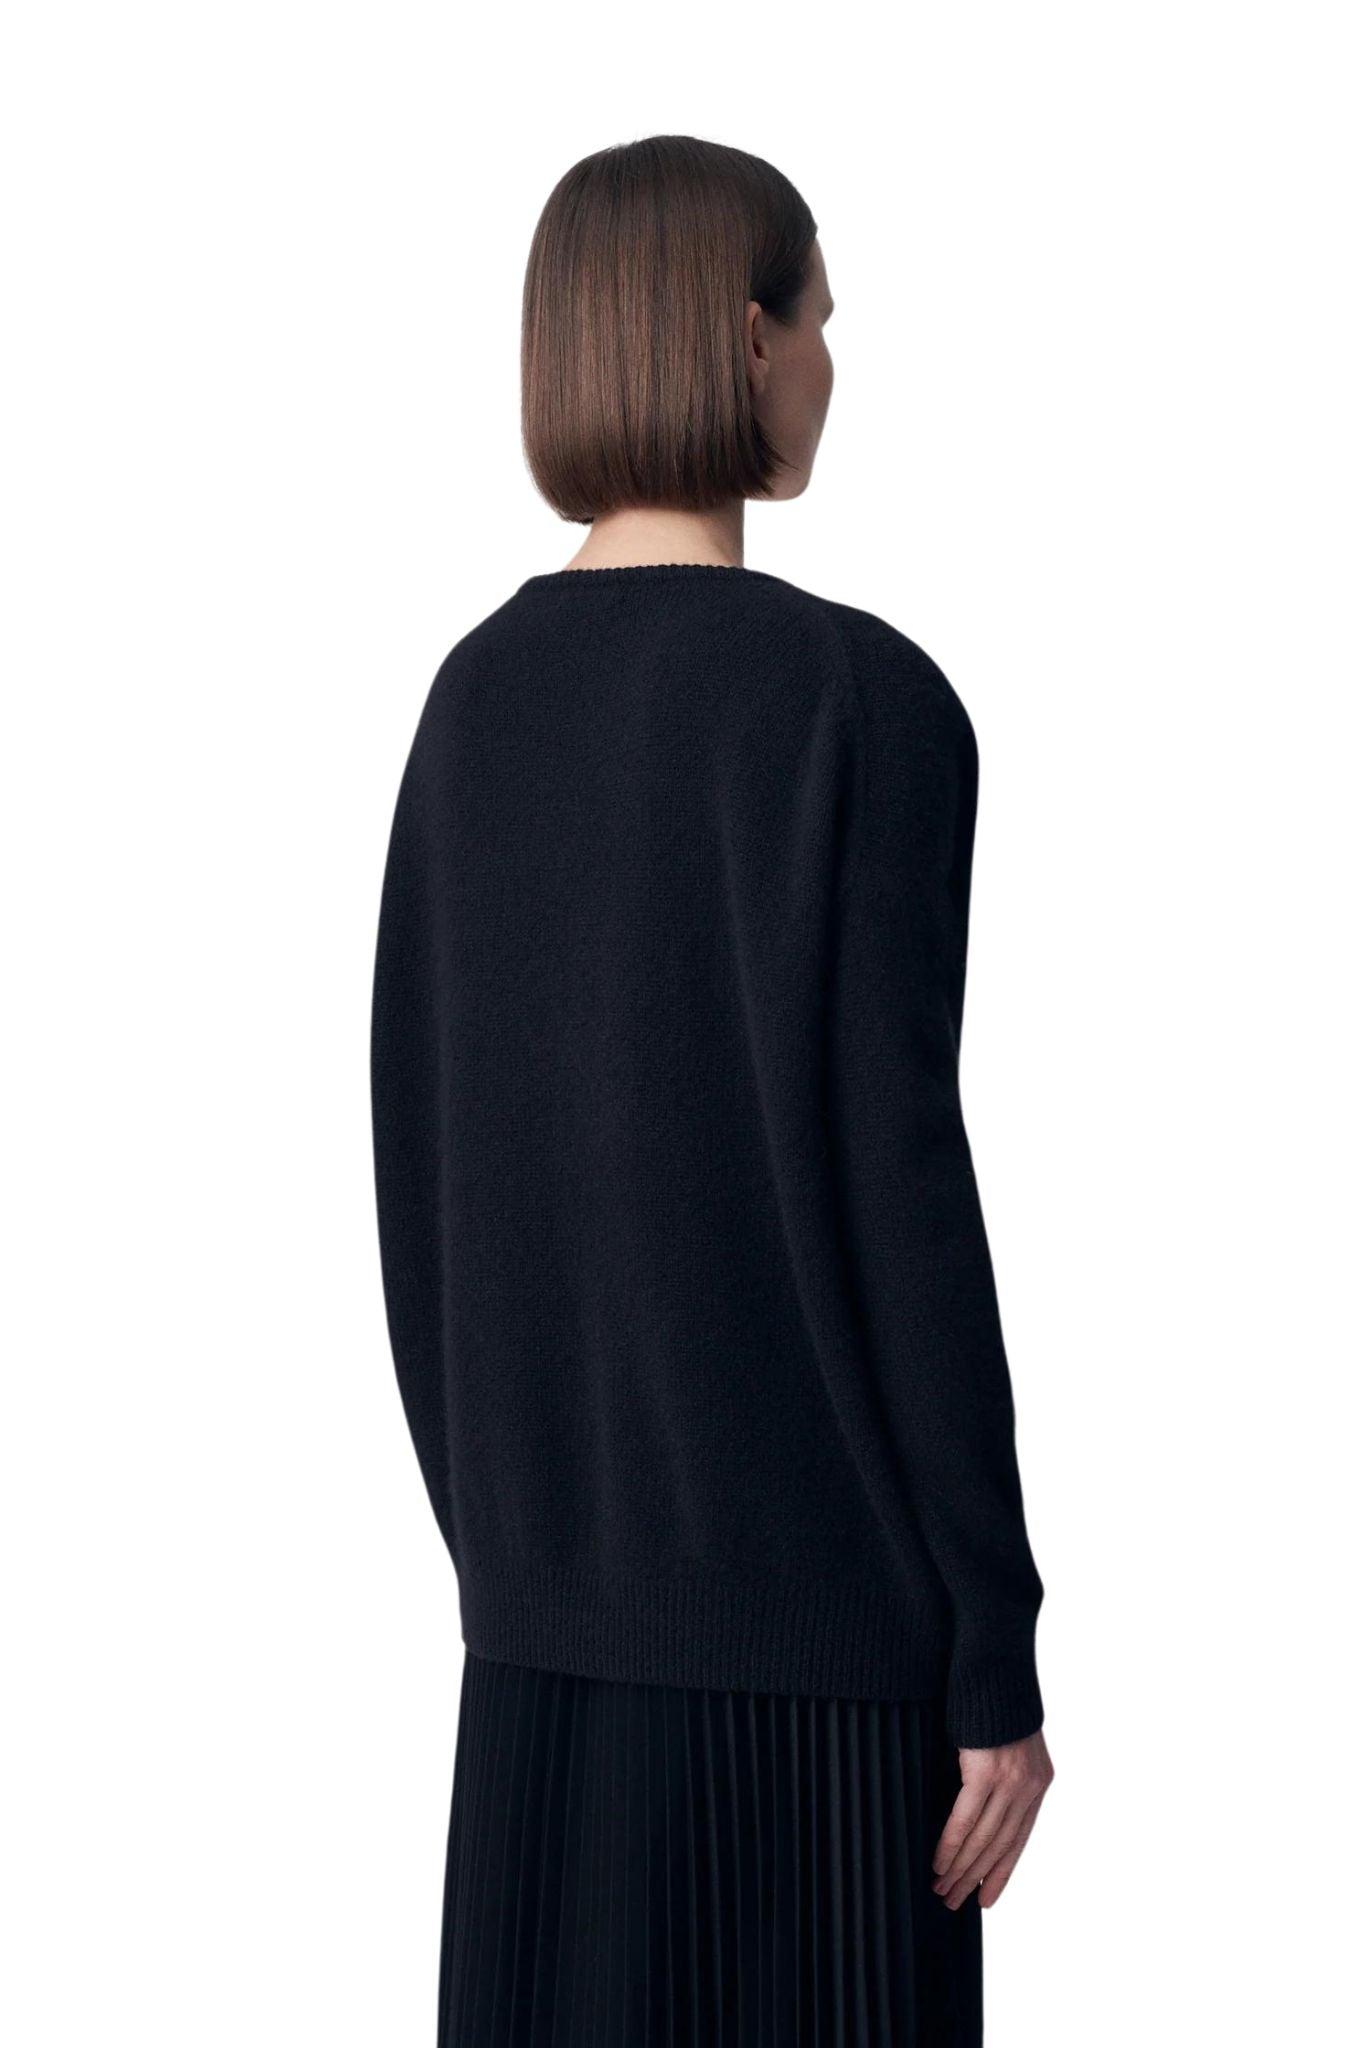 Co. V-neck Sweater in Black